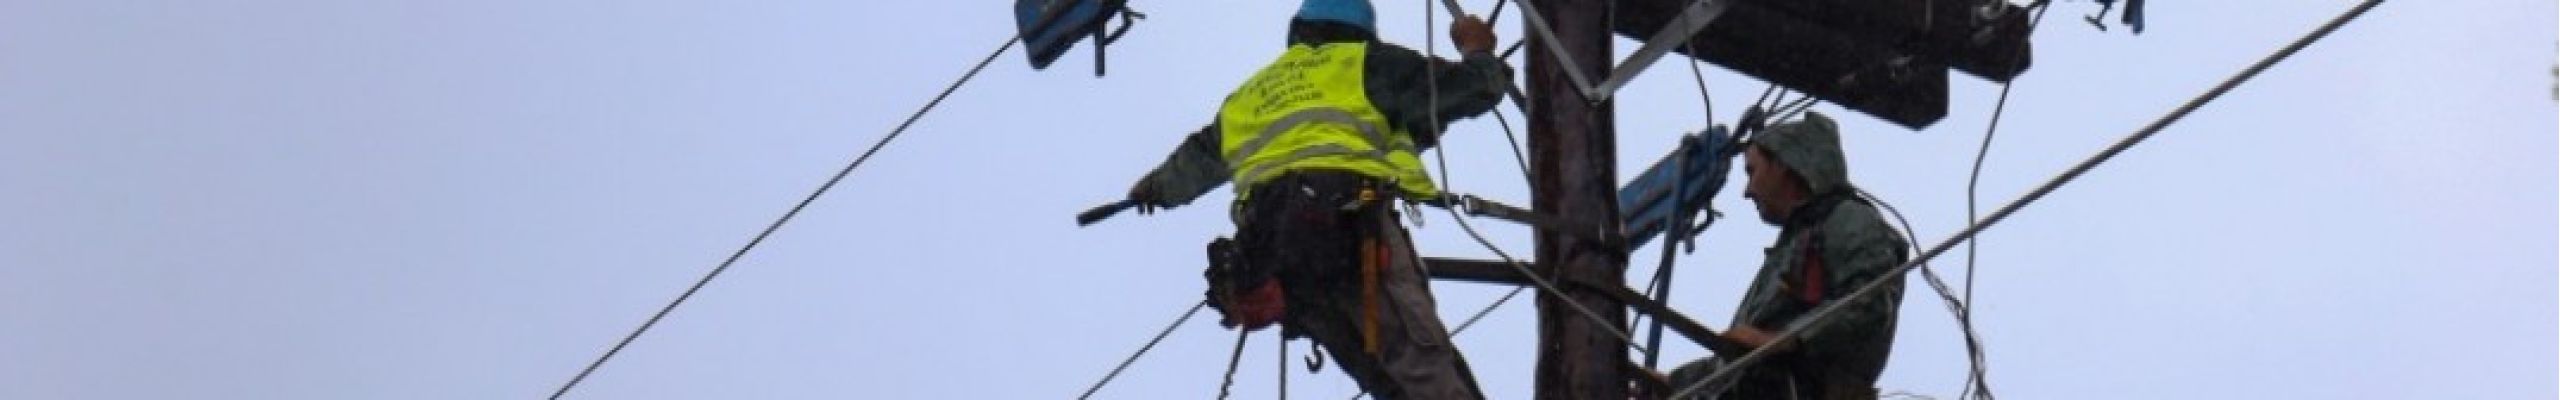 Διακοπή ηλεκτρικού ρεύματος τη Δευτέρα σε περιοχές της Κεφαλονιάς